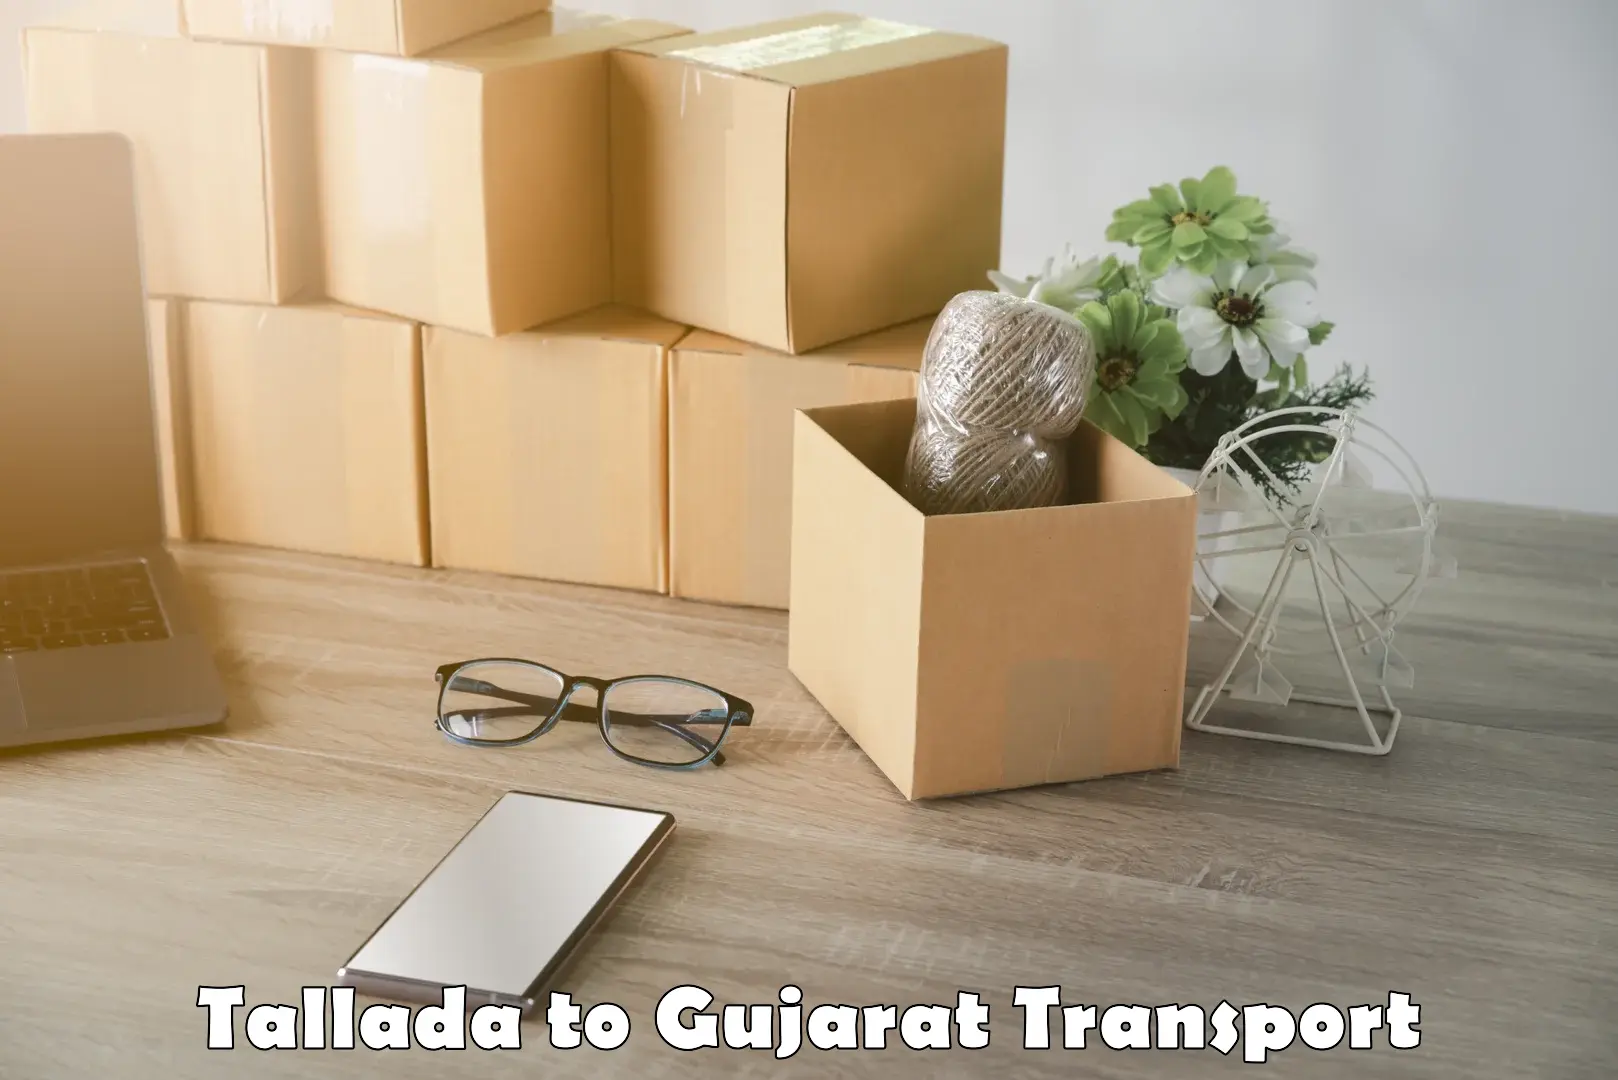 All India transport service Tallada to Vadodara